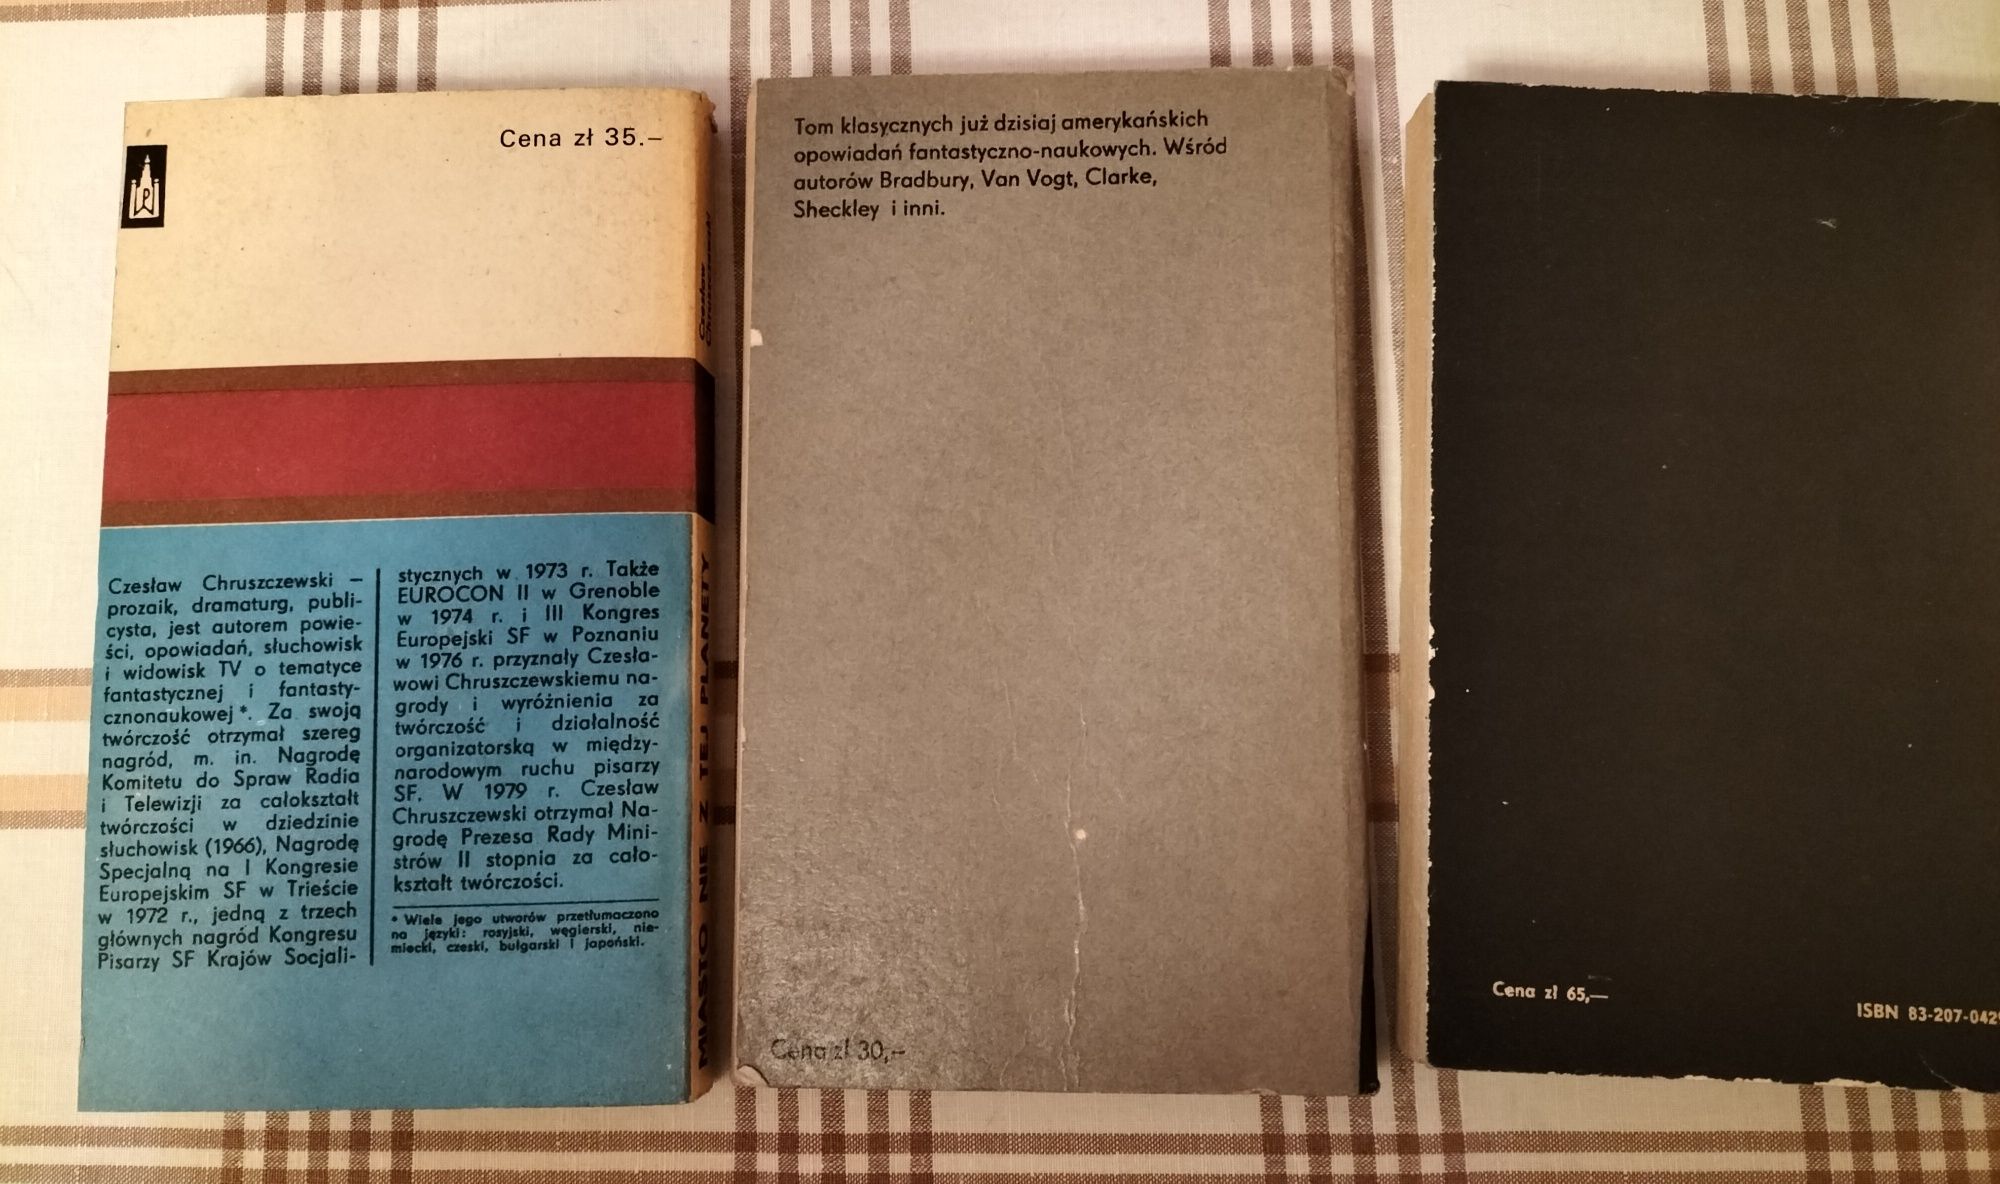 Fantastyka trzy książki lata 70-80